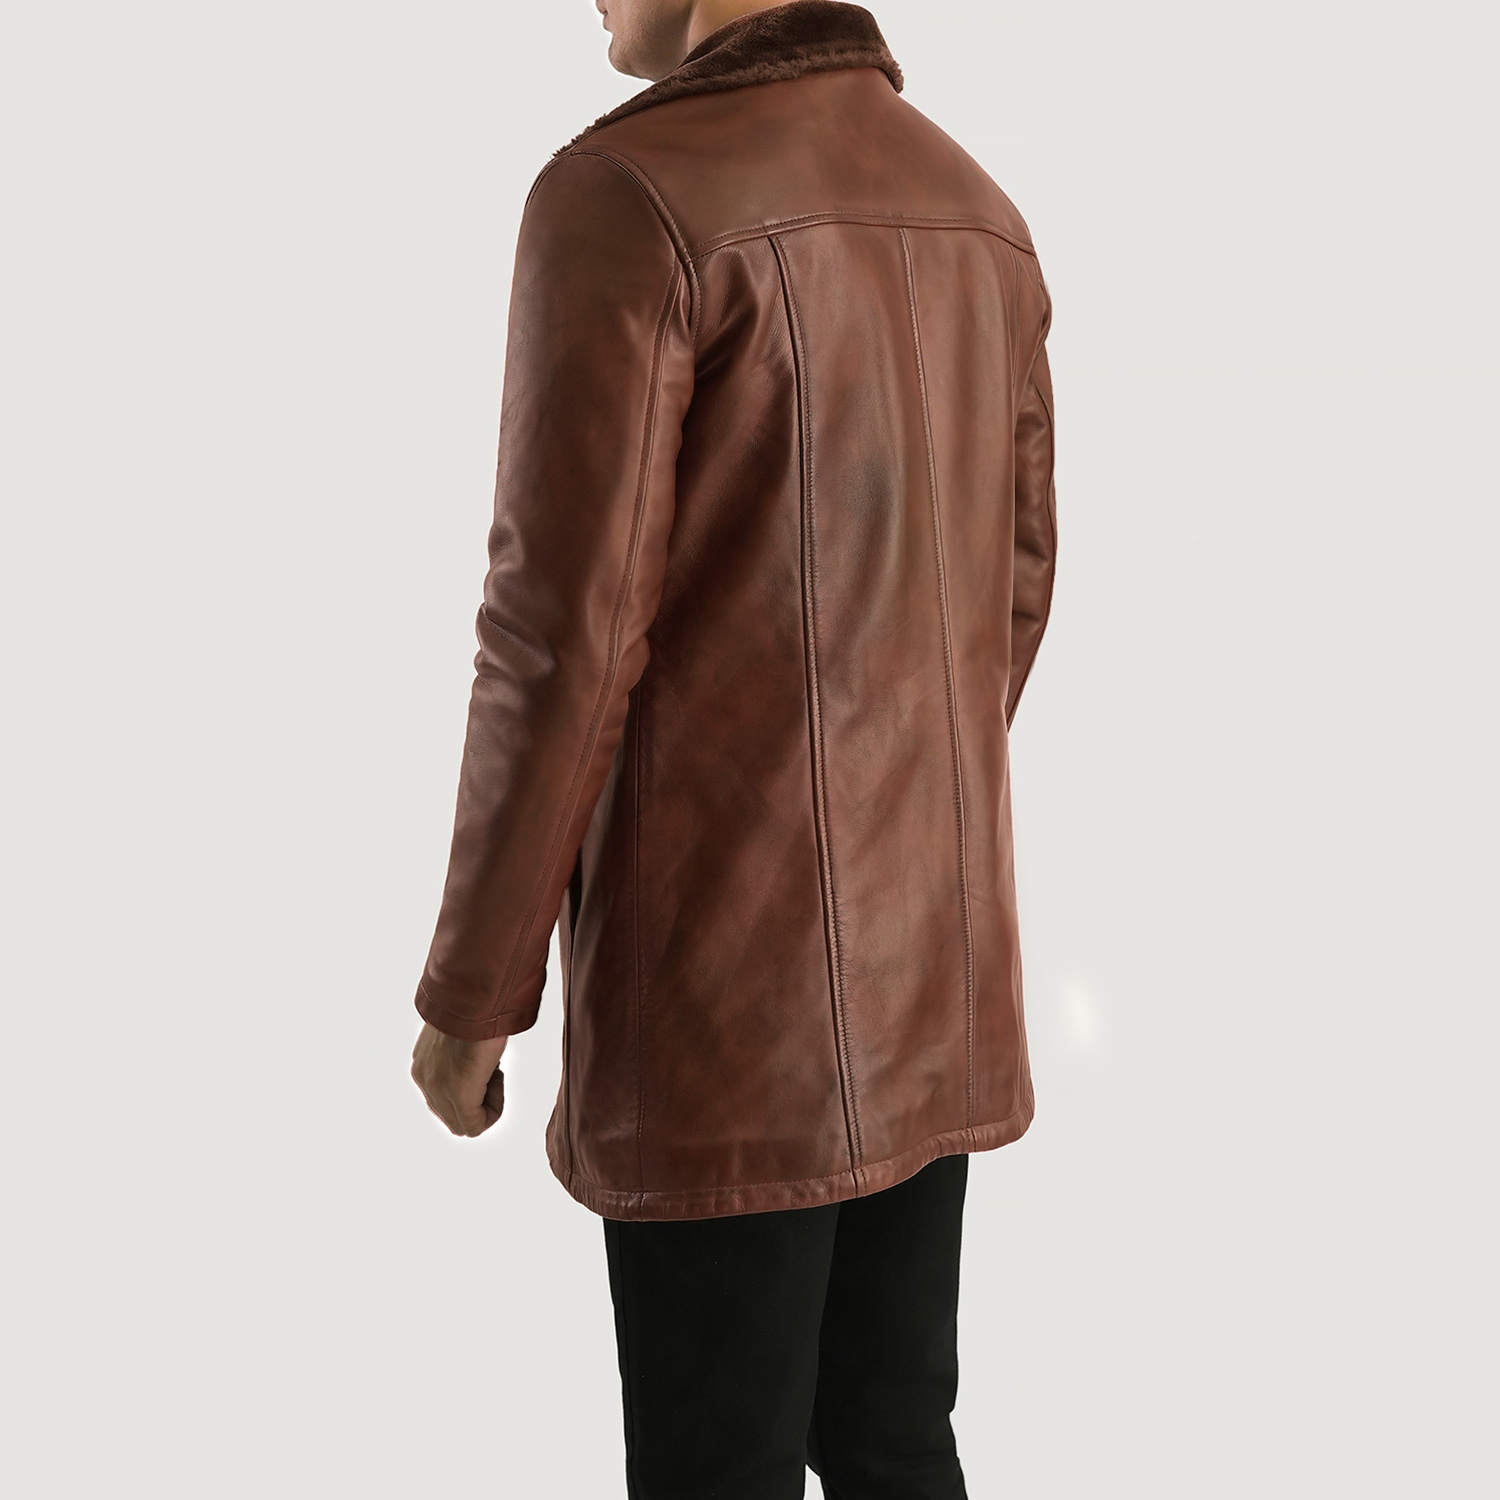 Men's Distressed Leather Fur Coat